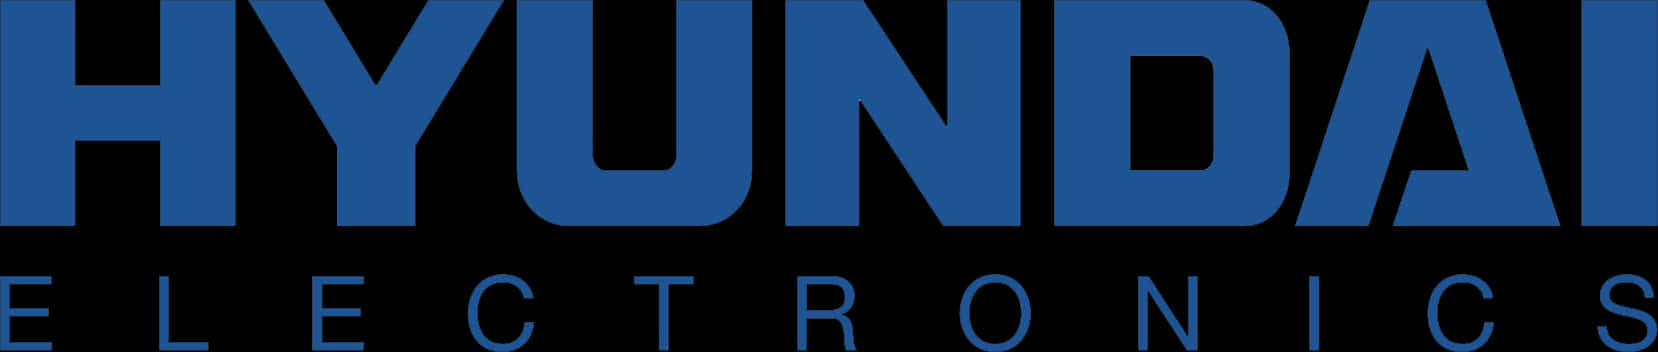 Hyundai Electronics Logo Blue